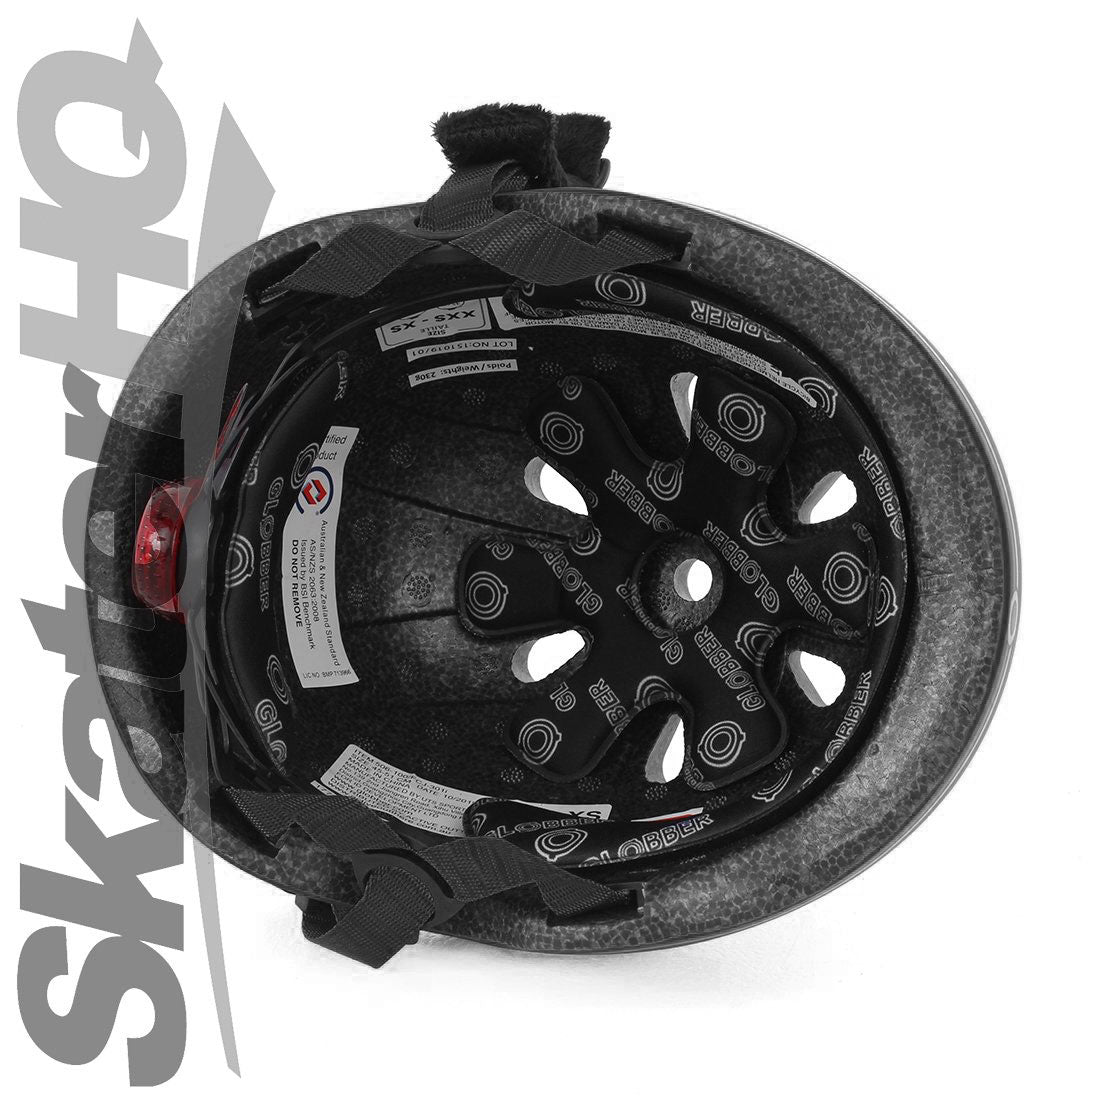 Globber LED Kids Helmet - Black - XS/S Helmets